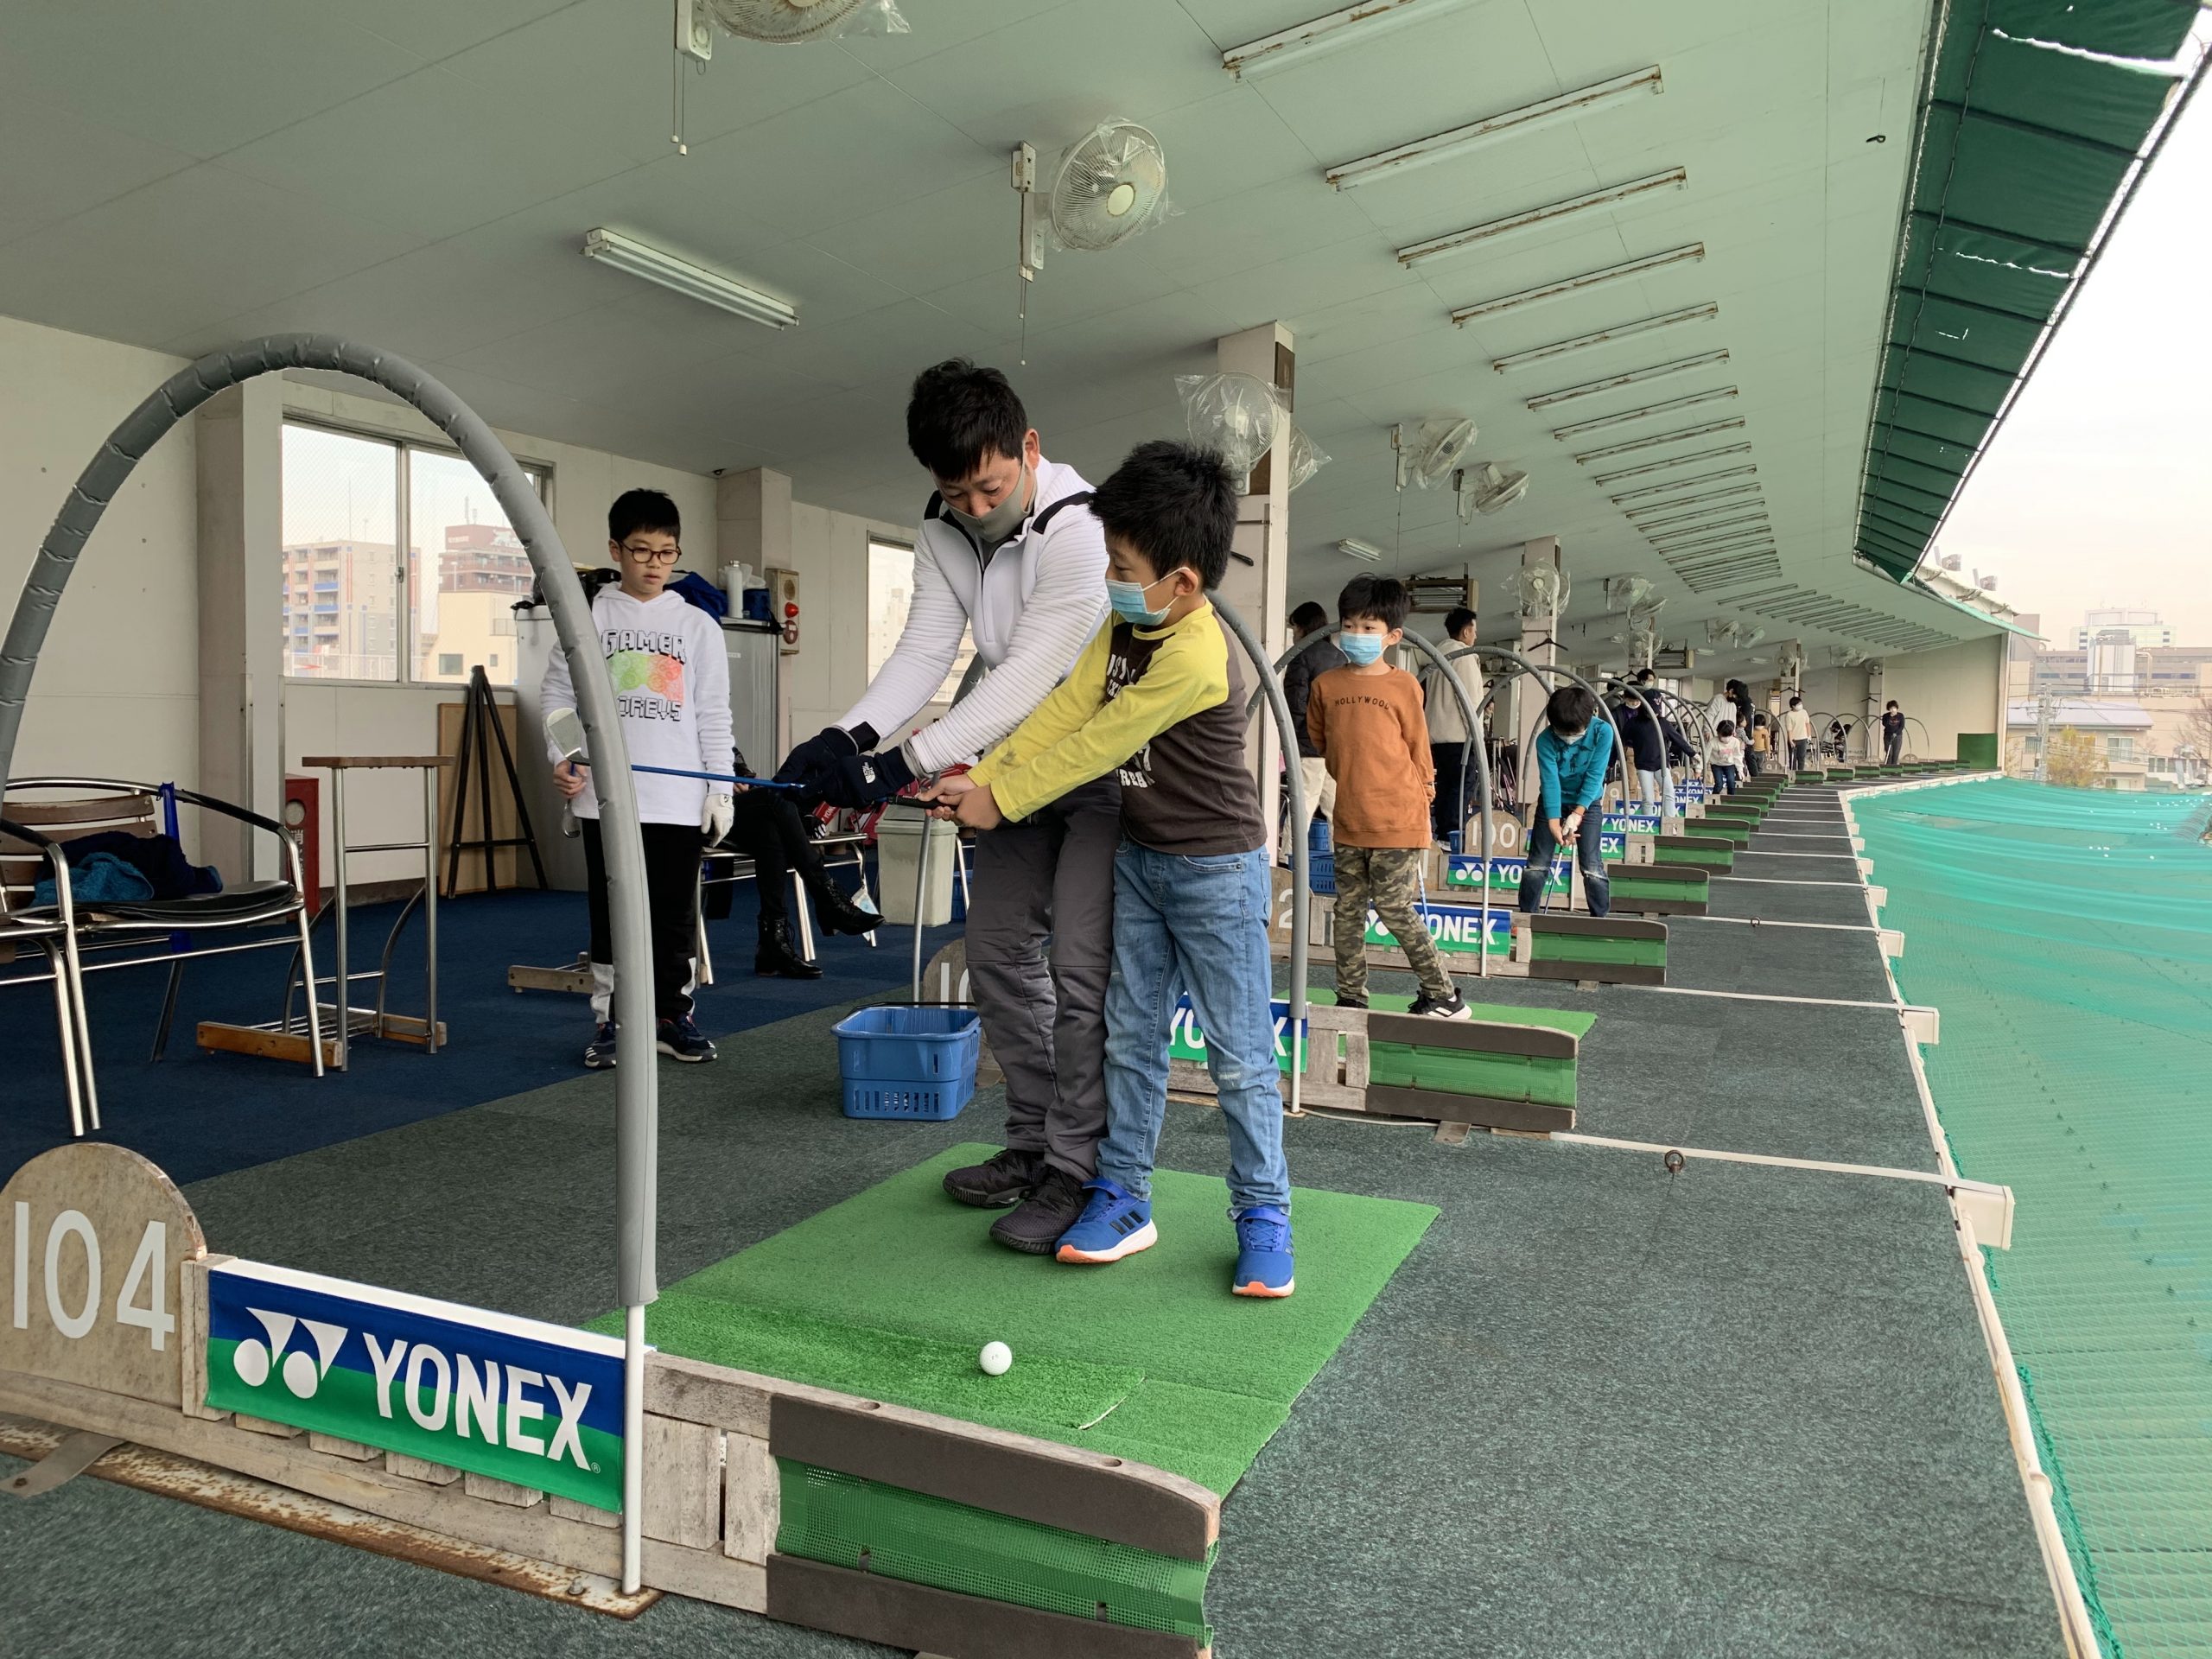 YJGA（ヨネックスジュニアゴルフアカデミー） 浅草橋校の雰囲気がわかる写真